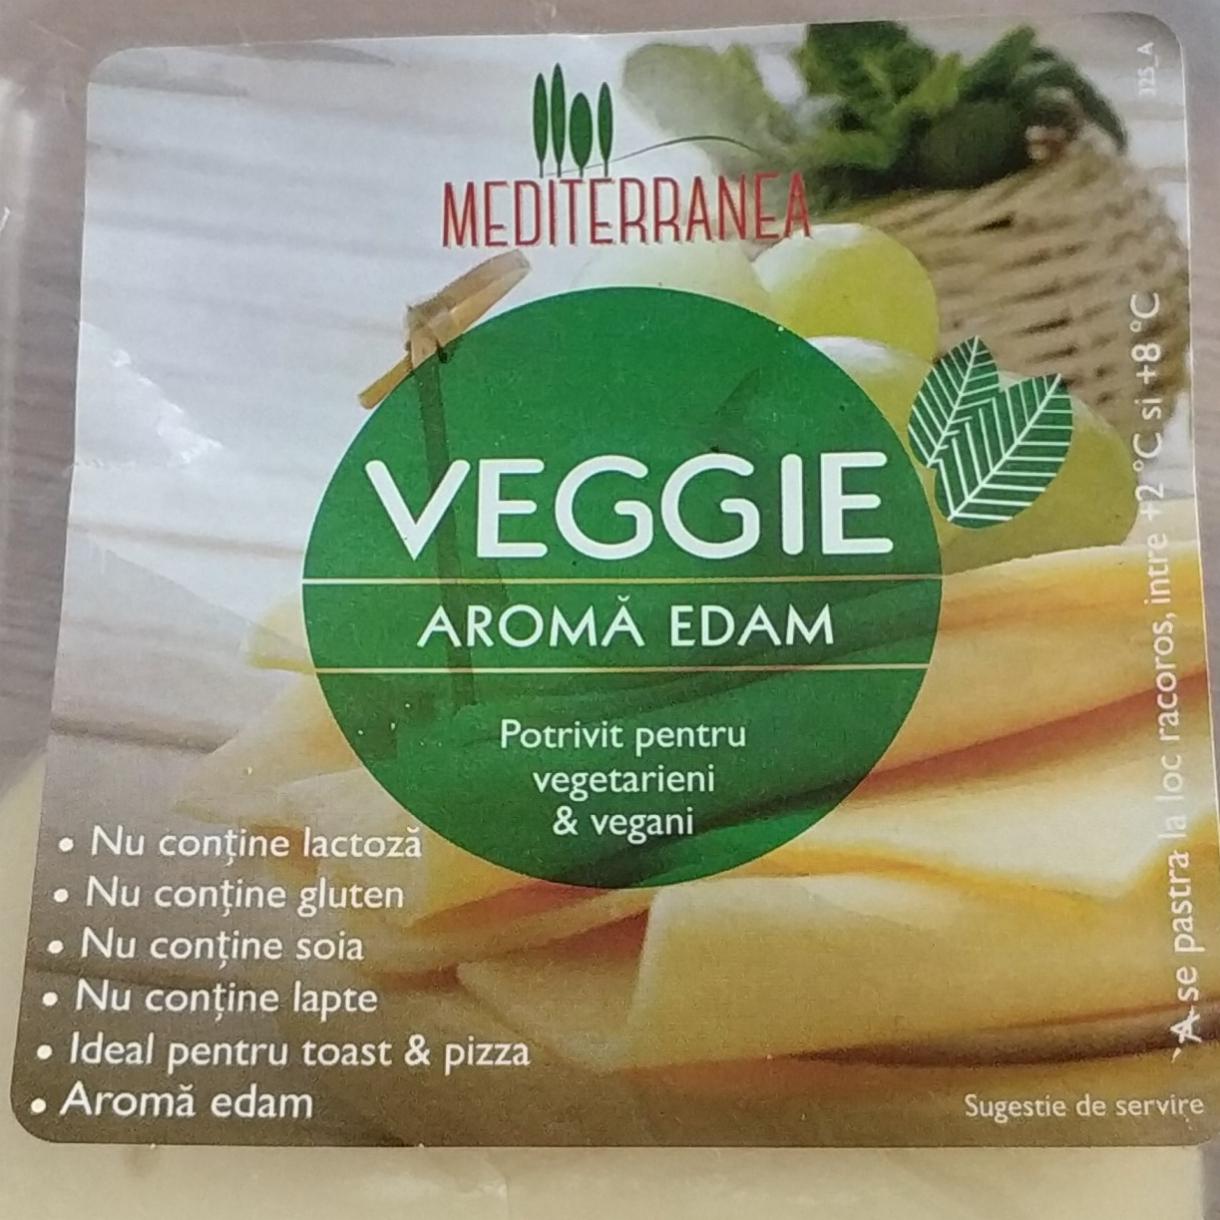 Фото - сыр с ароматом эдам веганский Mediterranea